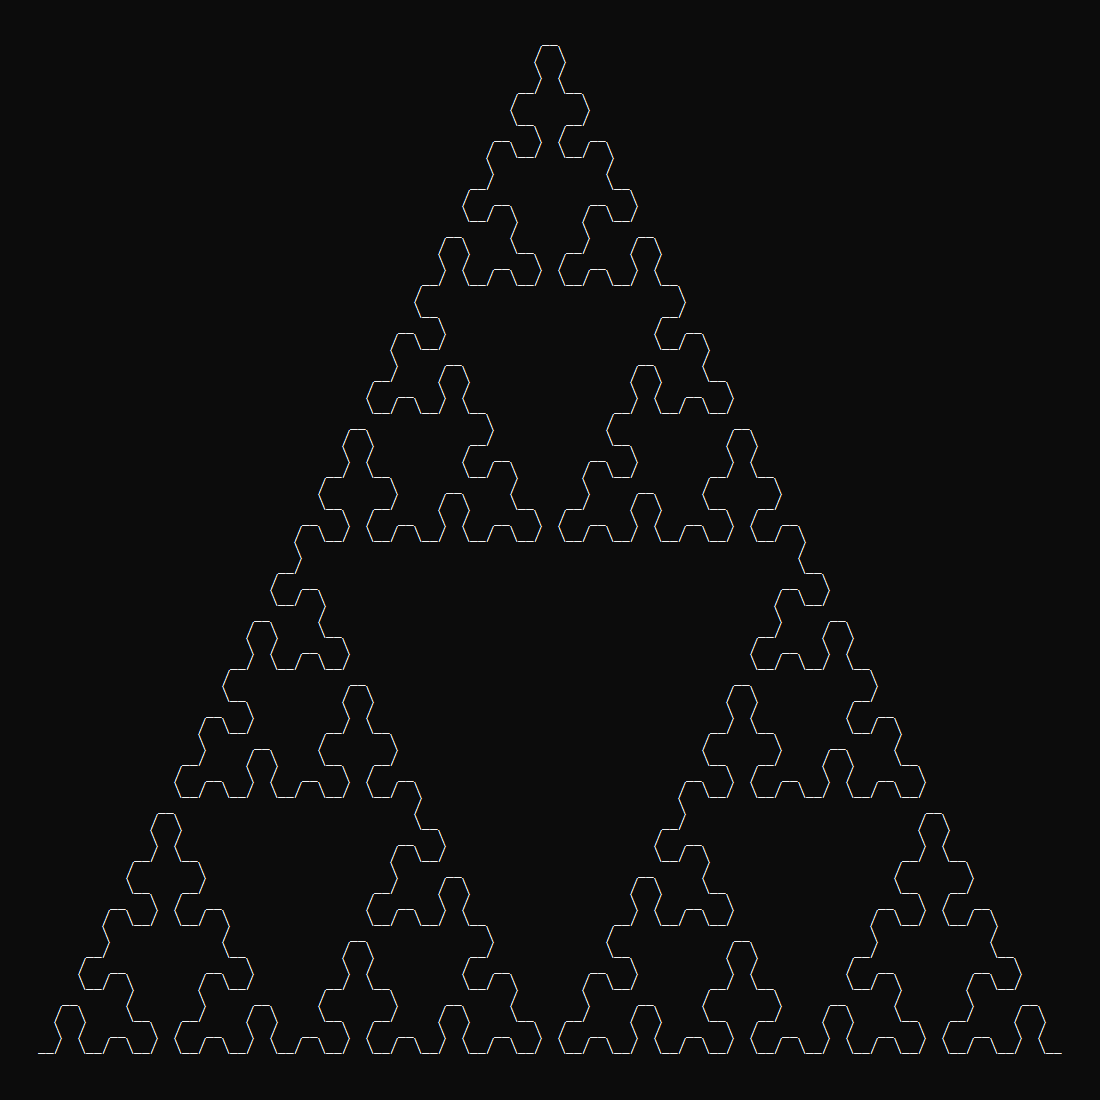 What sierpinski-arrowhead-cli prints to the console